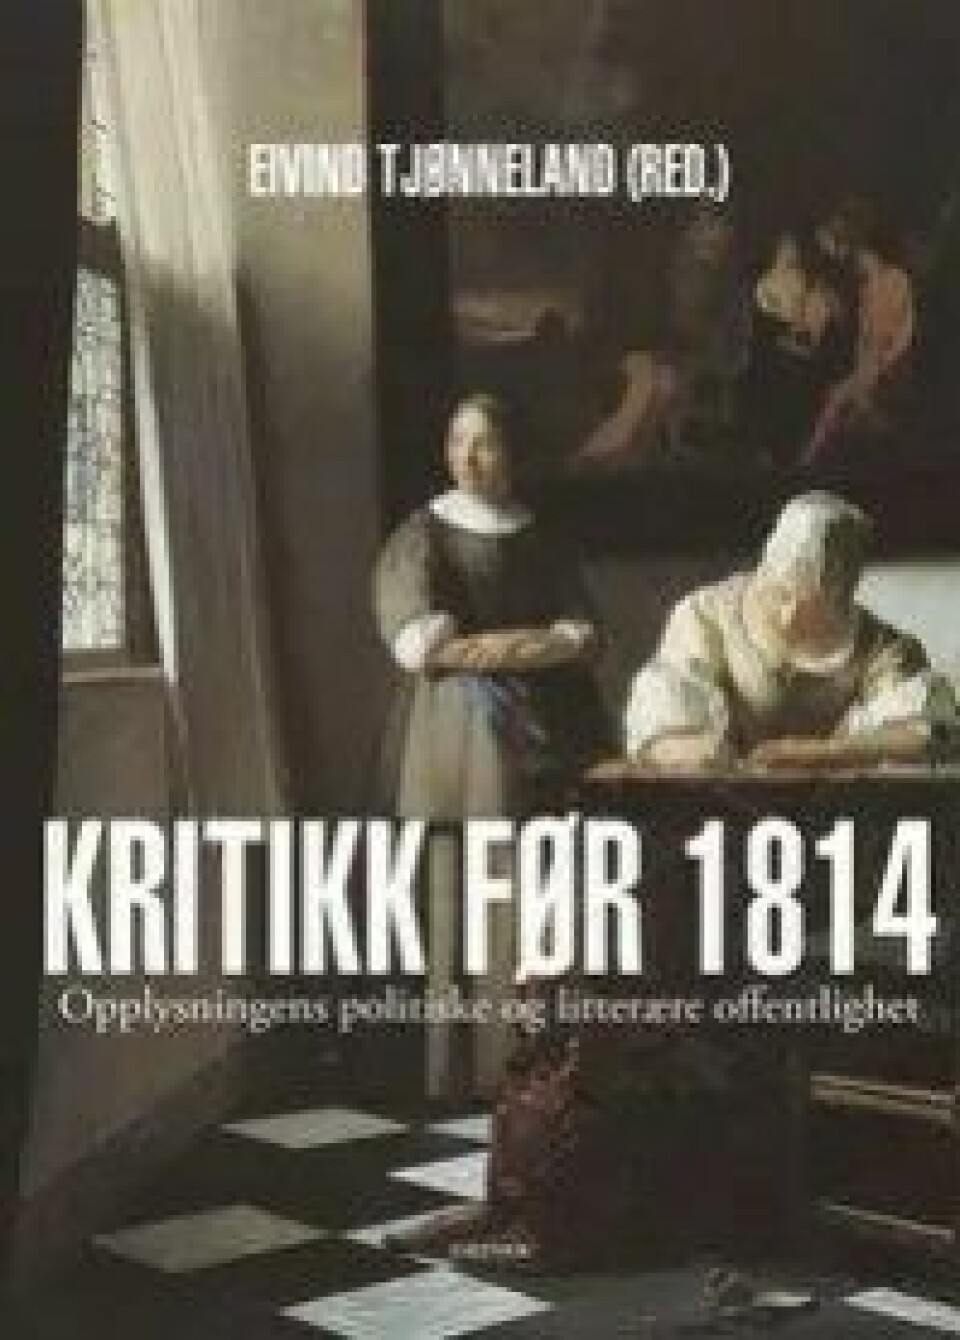 Kritikk før 1814: Opplysningens politiske og litterære offentlighet, redigert av Eivind Tjønneland (Dreyers forlag, 2014)